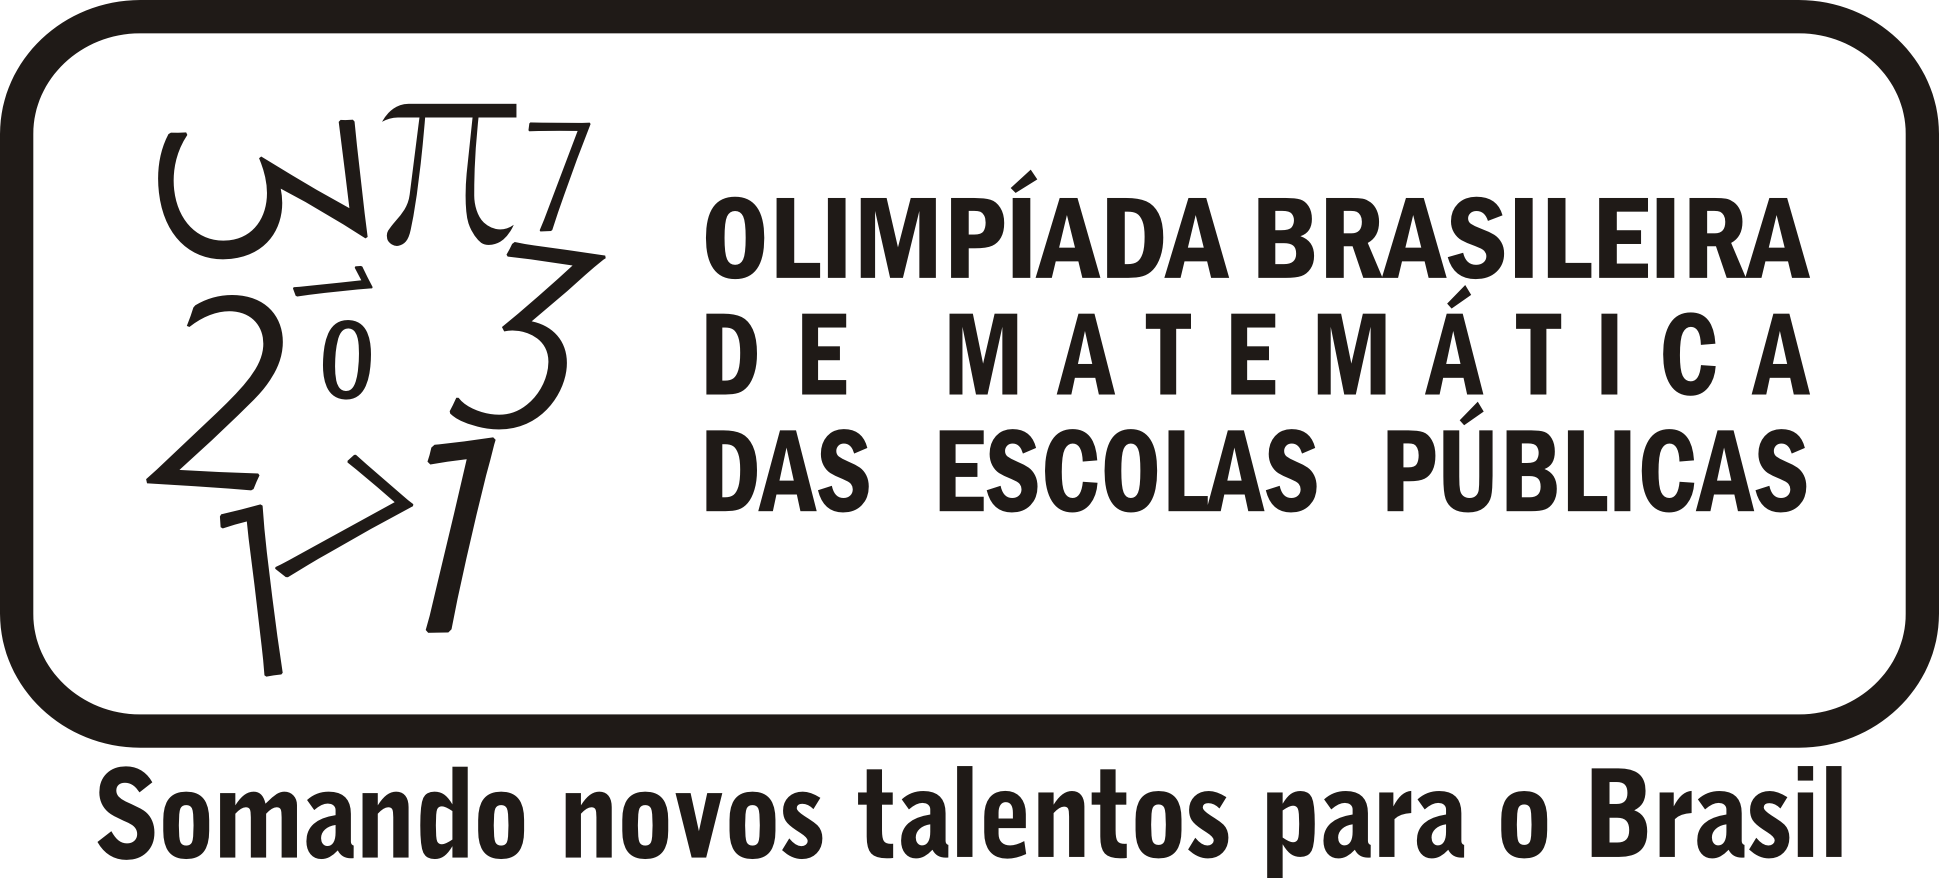 Inscrições Abertas para a maior olimpíada do mundo, a OBMEP 2015!